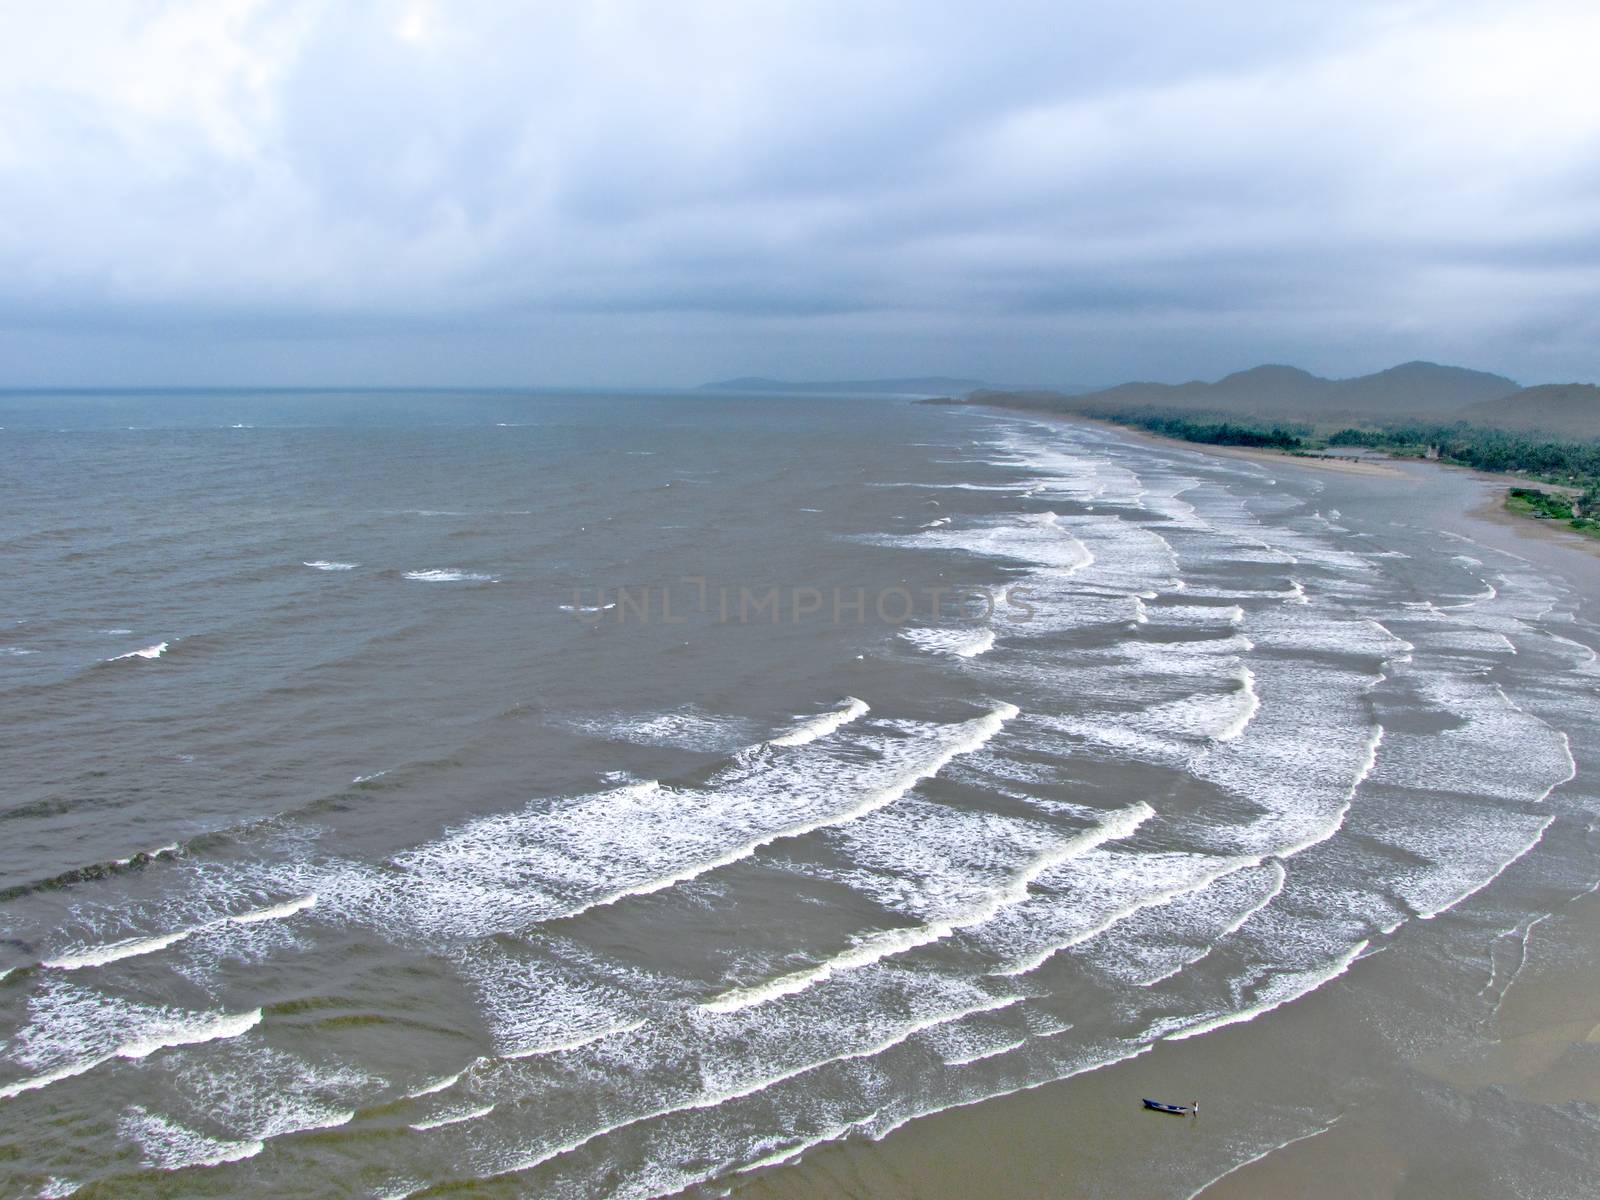 Arial view of waves pattern and sea at Murudeshwar, Karnataka, India.